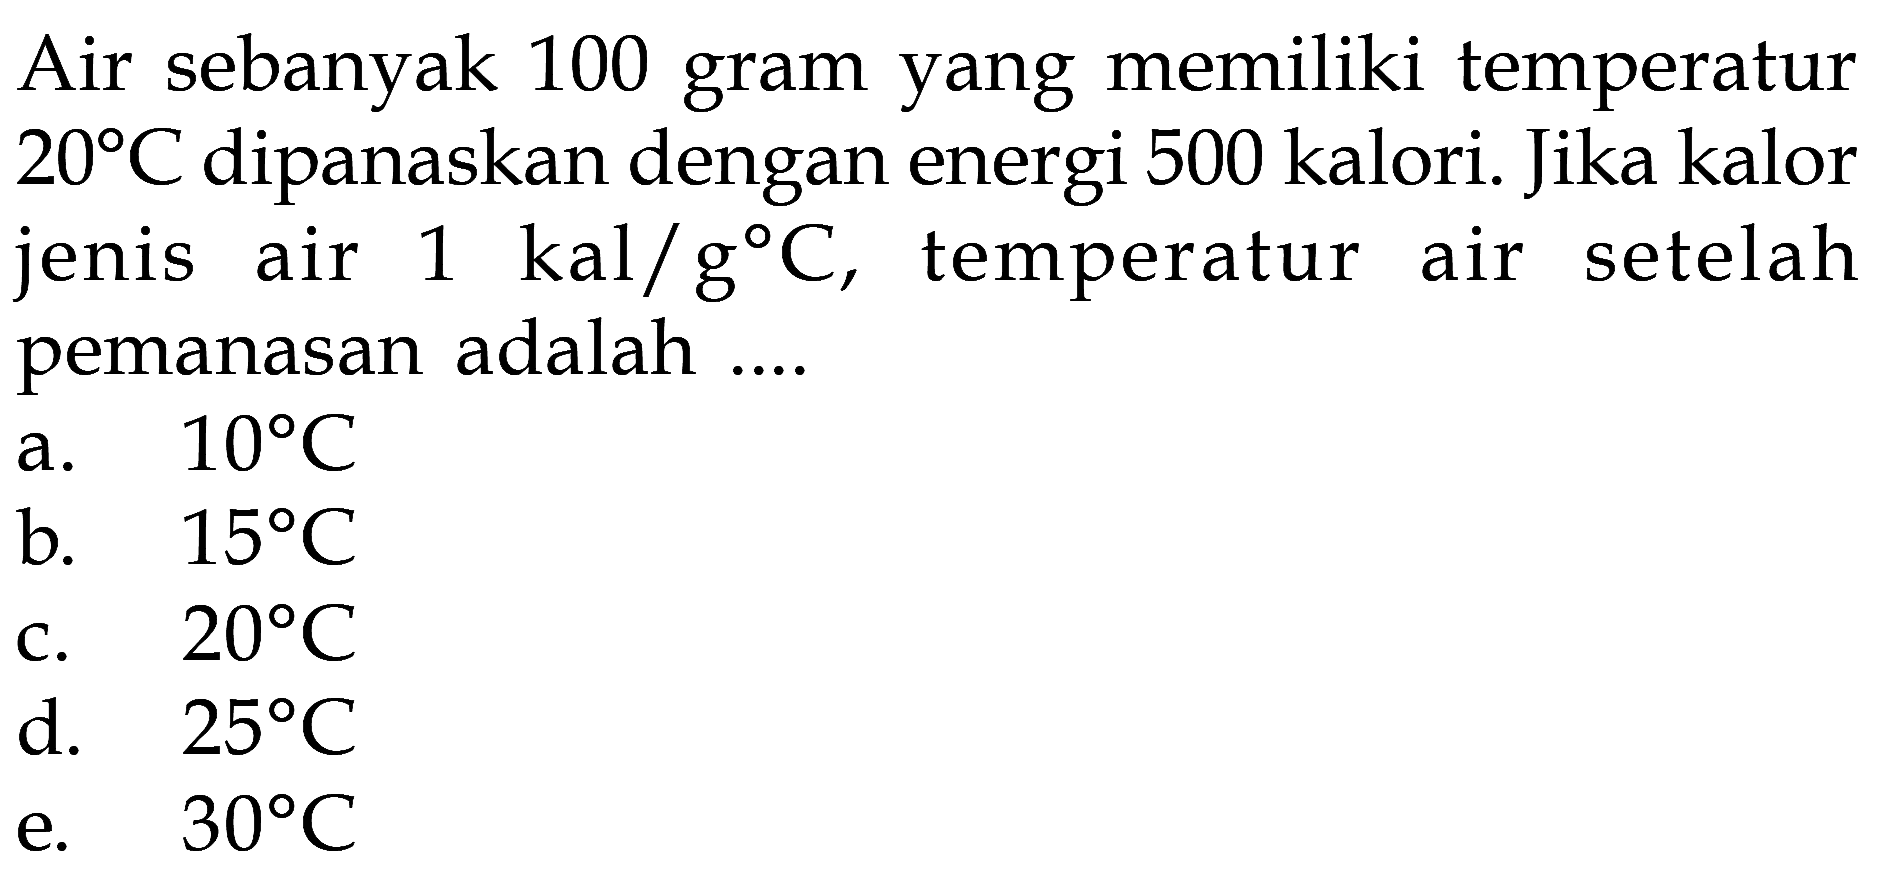 Air sebanyak 100 gram yang memiliki temperatur 20 C dipanaskan dengan energi 500 kalori. Jika kalor jenis air 1 kal/g C, temperatur air setelah pemanasan adalah....